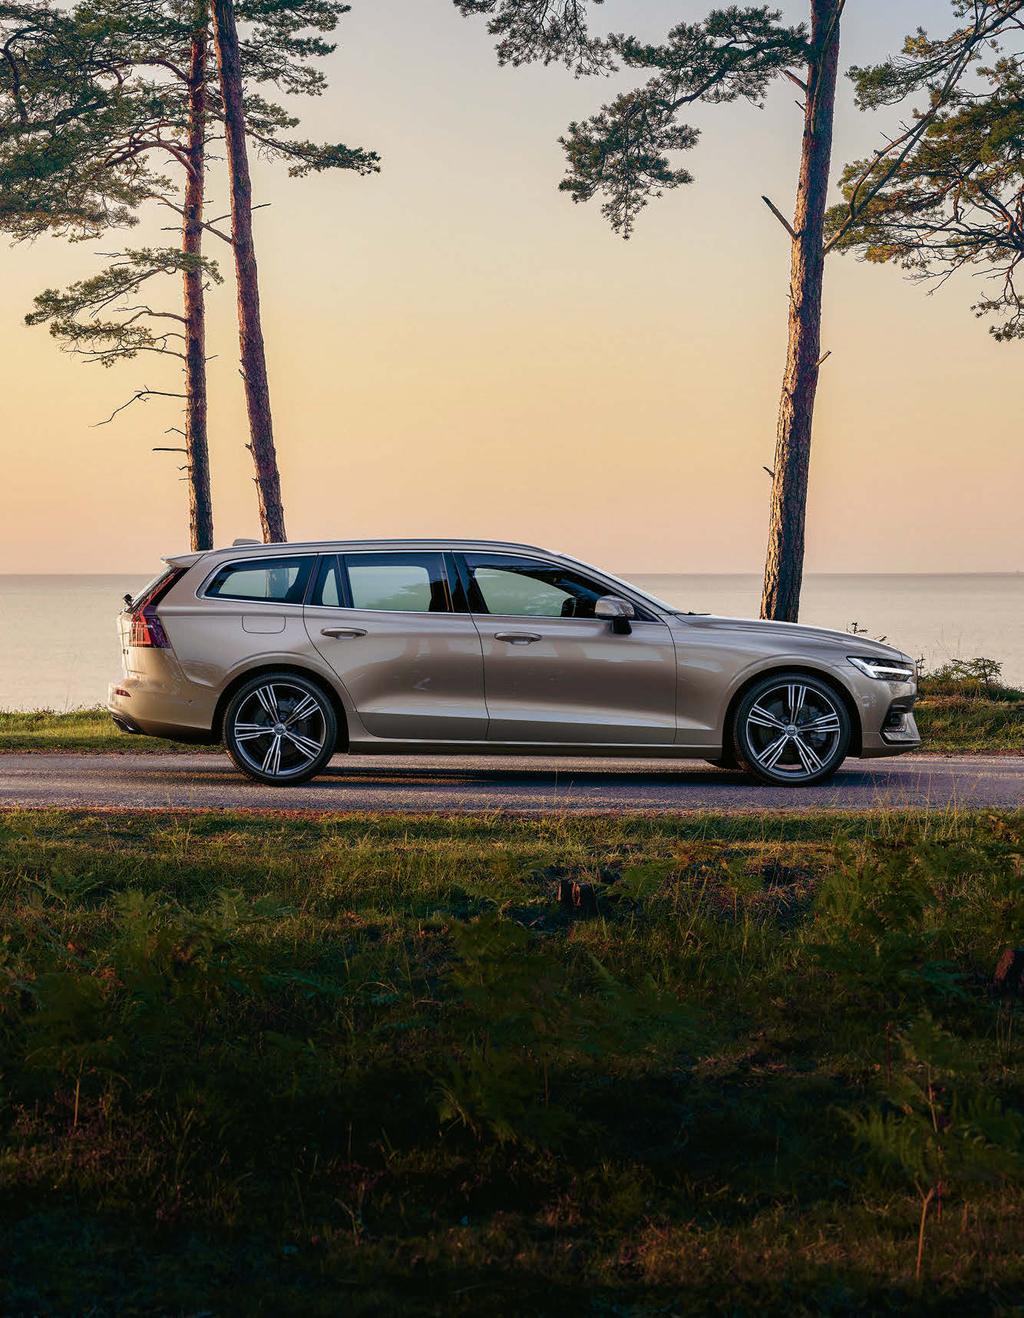 Seit mehr als 60 Jahren verfolgt Volvo Cars die Vision, Kombis zu bauen, die das Leben der Menschen bereichern. Der neue Volvo V60 spiegelt genau diese Vision wider.